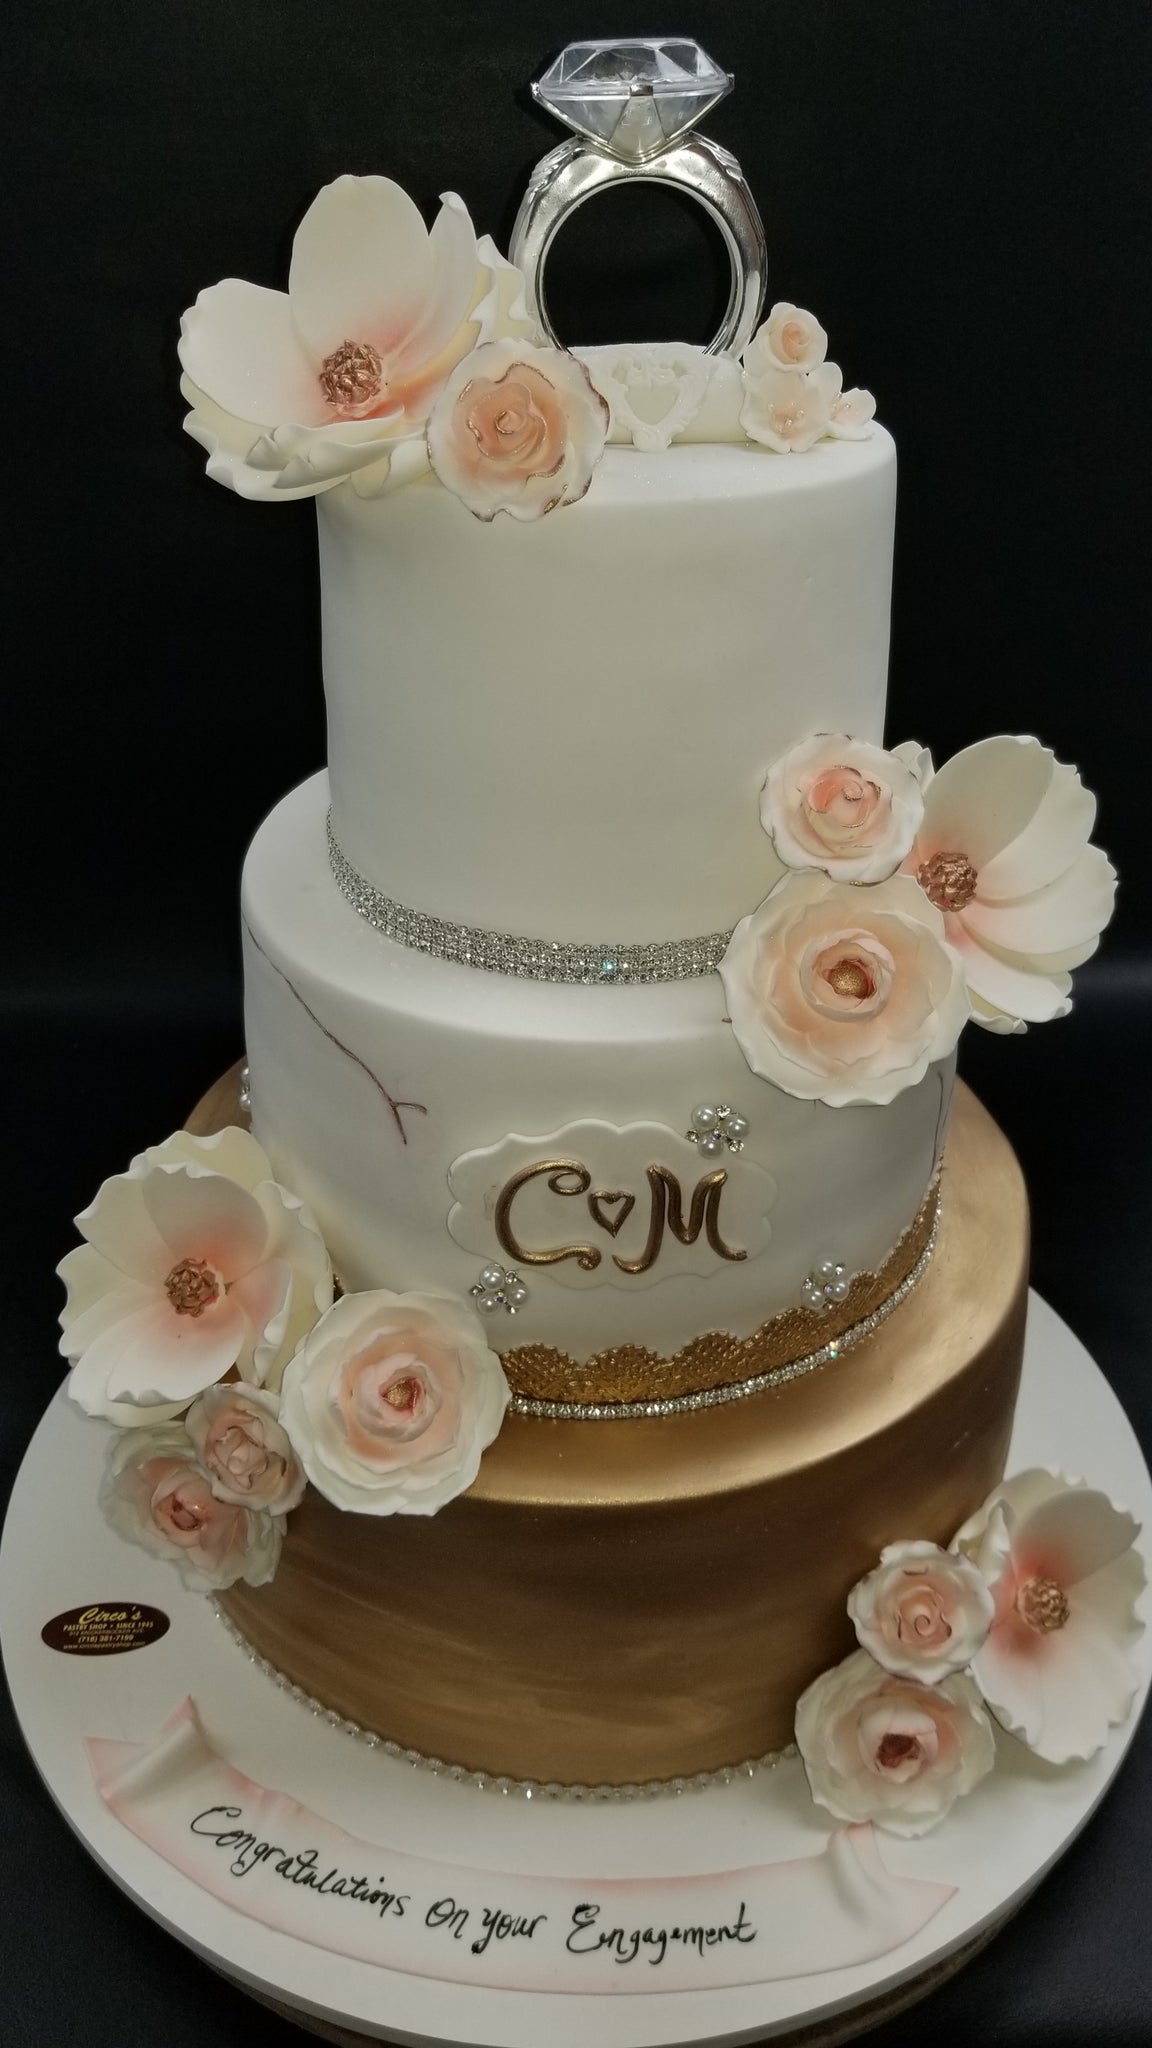 Acrylic Mr & Mrs Wedding Rings Silhouette Wedding Cake Topper couple  cake topper | eBay